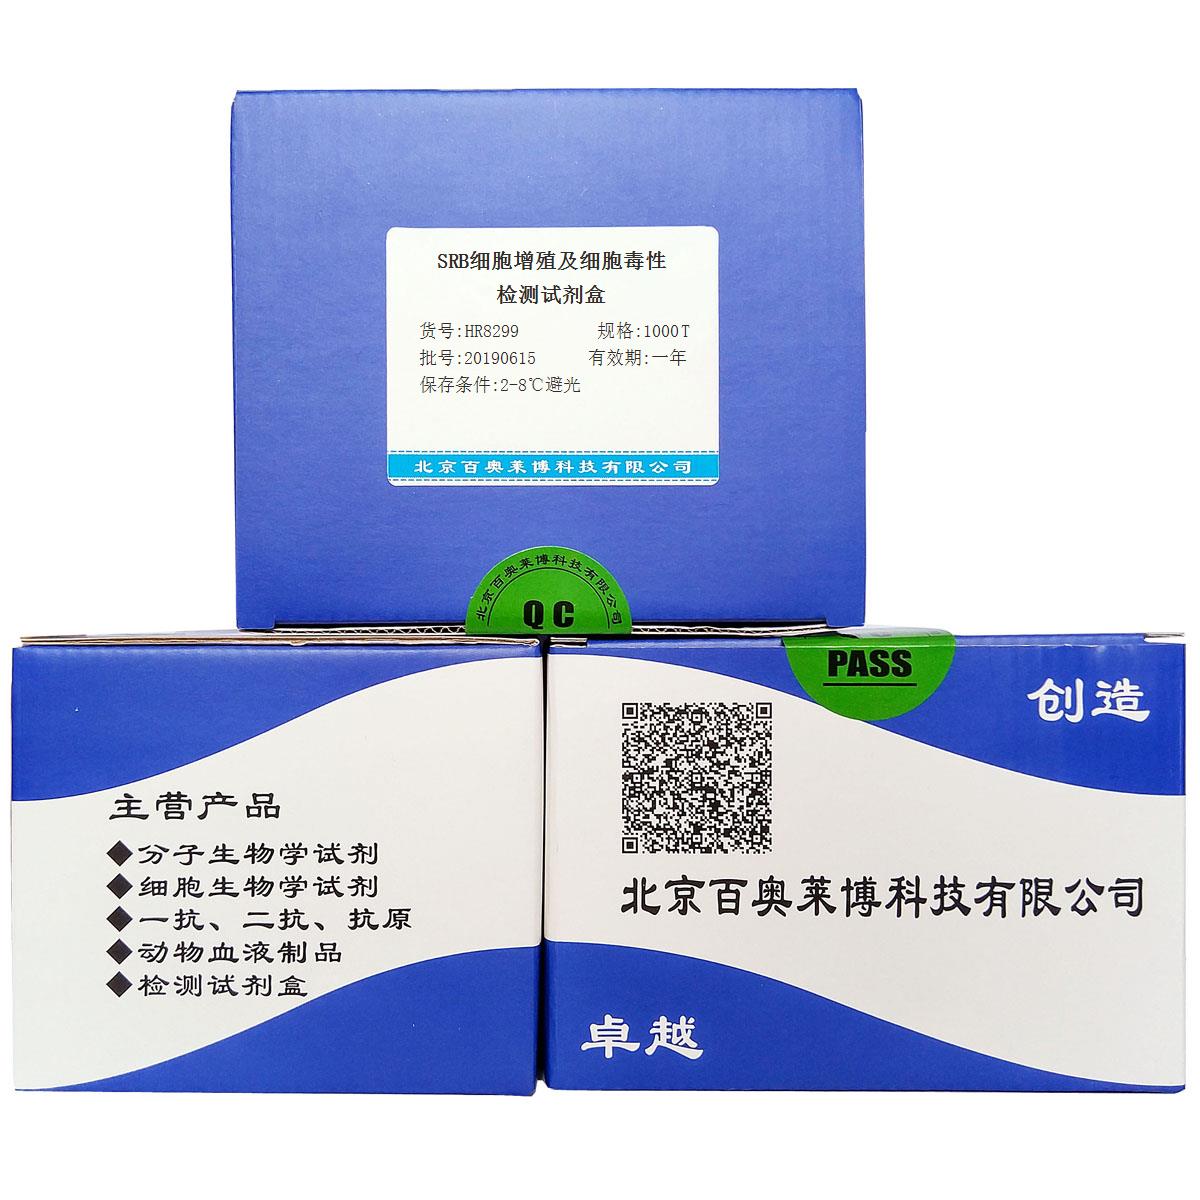 SRB细胞增殖及细胞毒性检测试剂盒北京现货